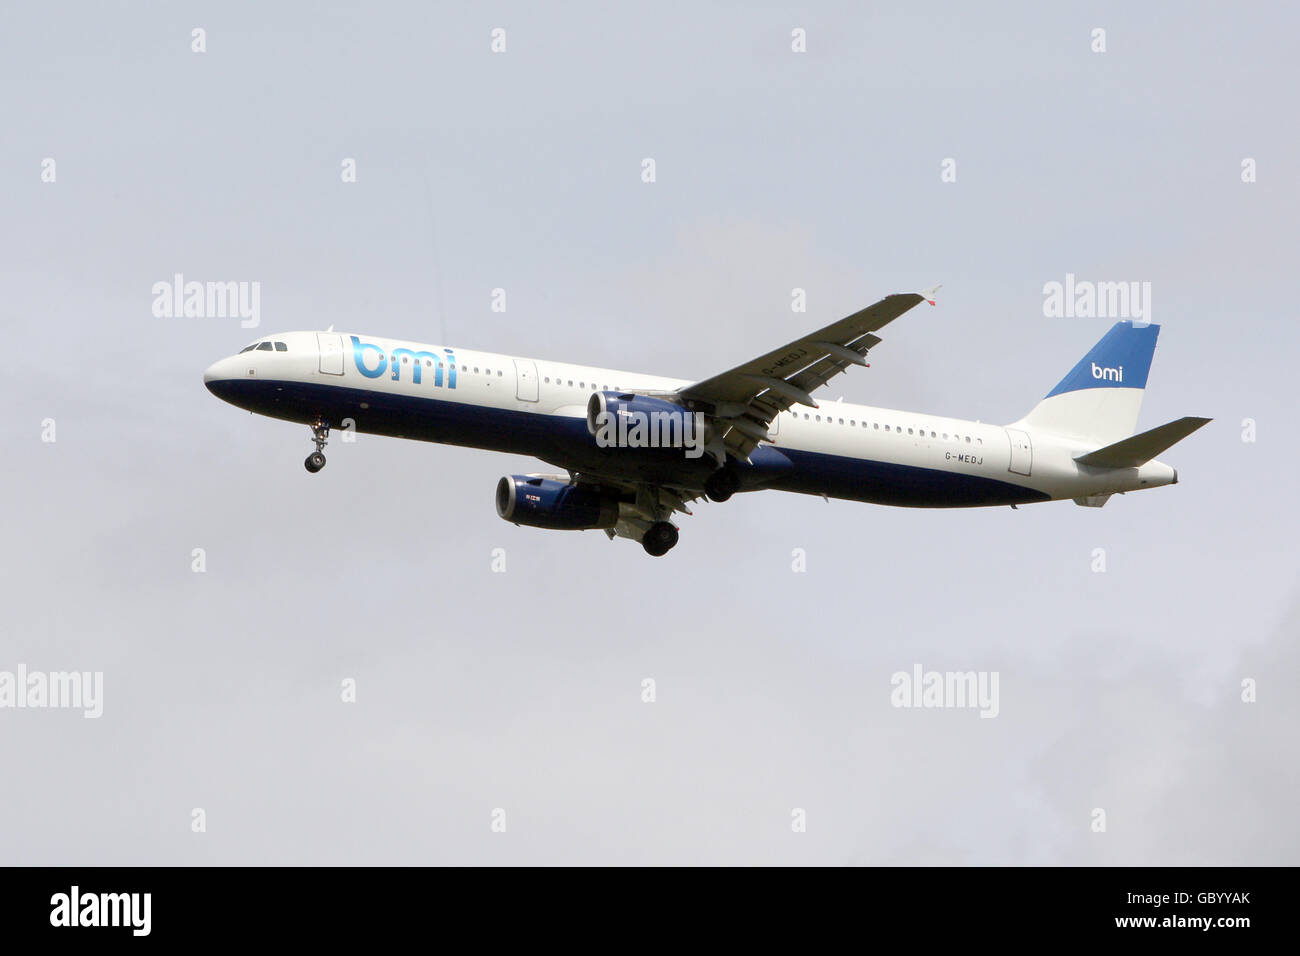 Un aereo BMI Airbus A321 atterra all'aeroporto di Heathrow, Middlesex. PREMERE ASSOCIAZIONE foto. Data immagine: Lunedì 20 luglio 2009. Il credito fotografico dovrebbe essere: Steve Parsons/PA Wire Foto Stock